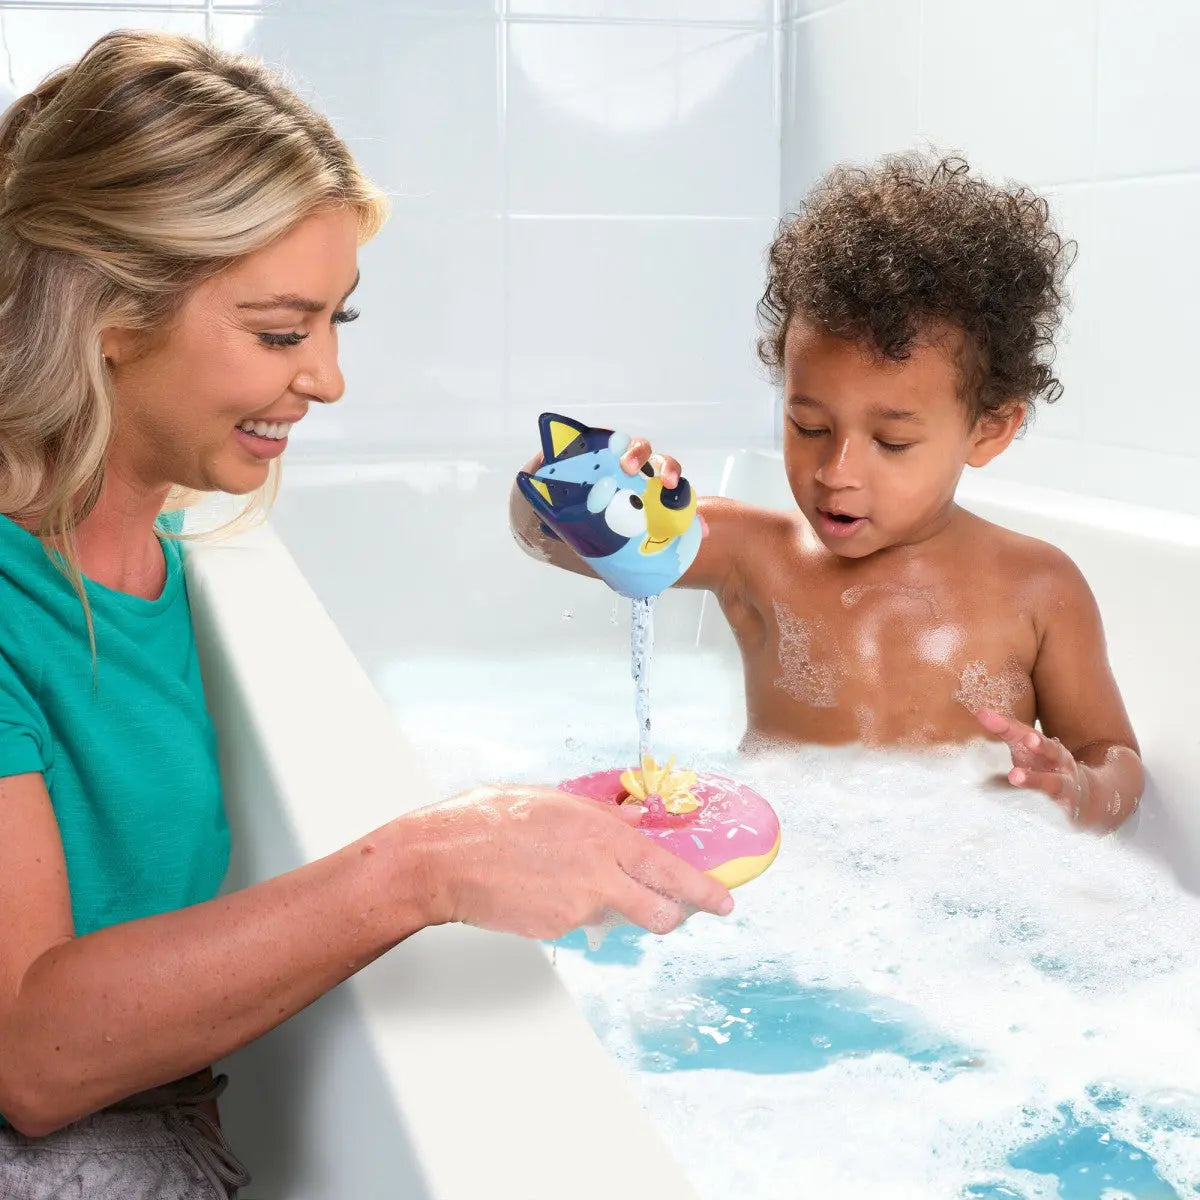 Tomy Splash and Float Bluey Bath Toy TOMY